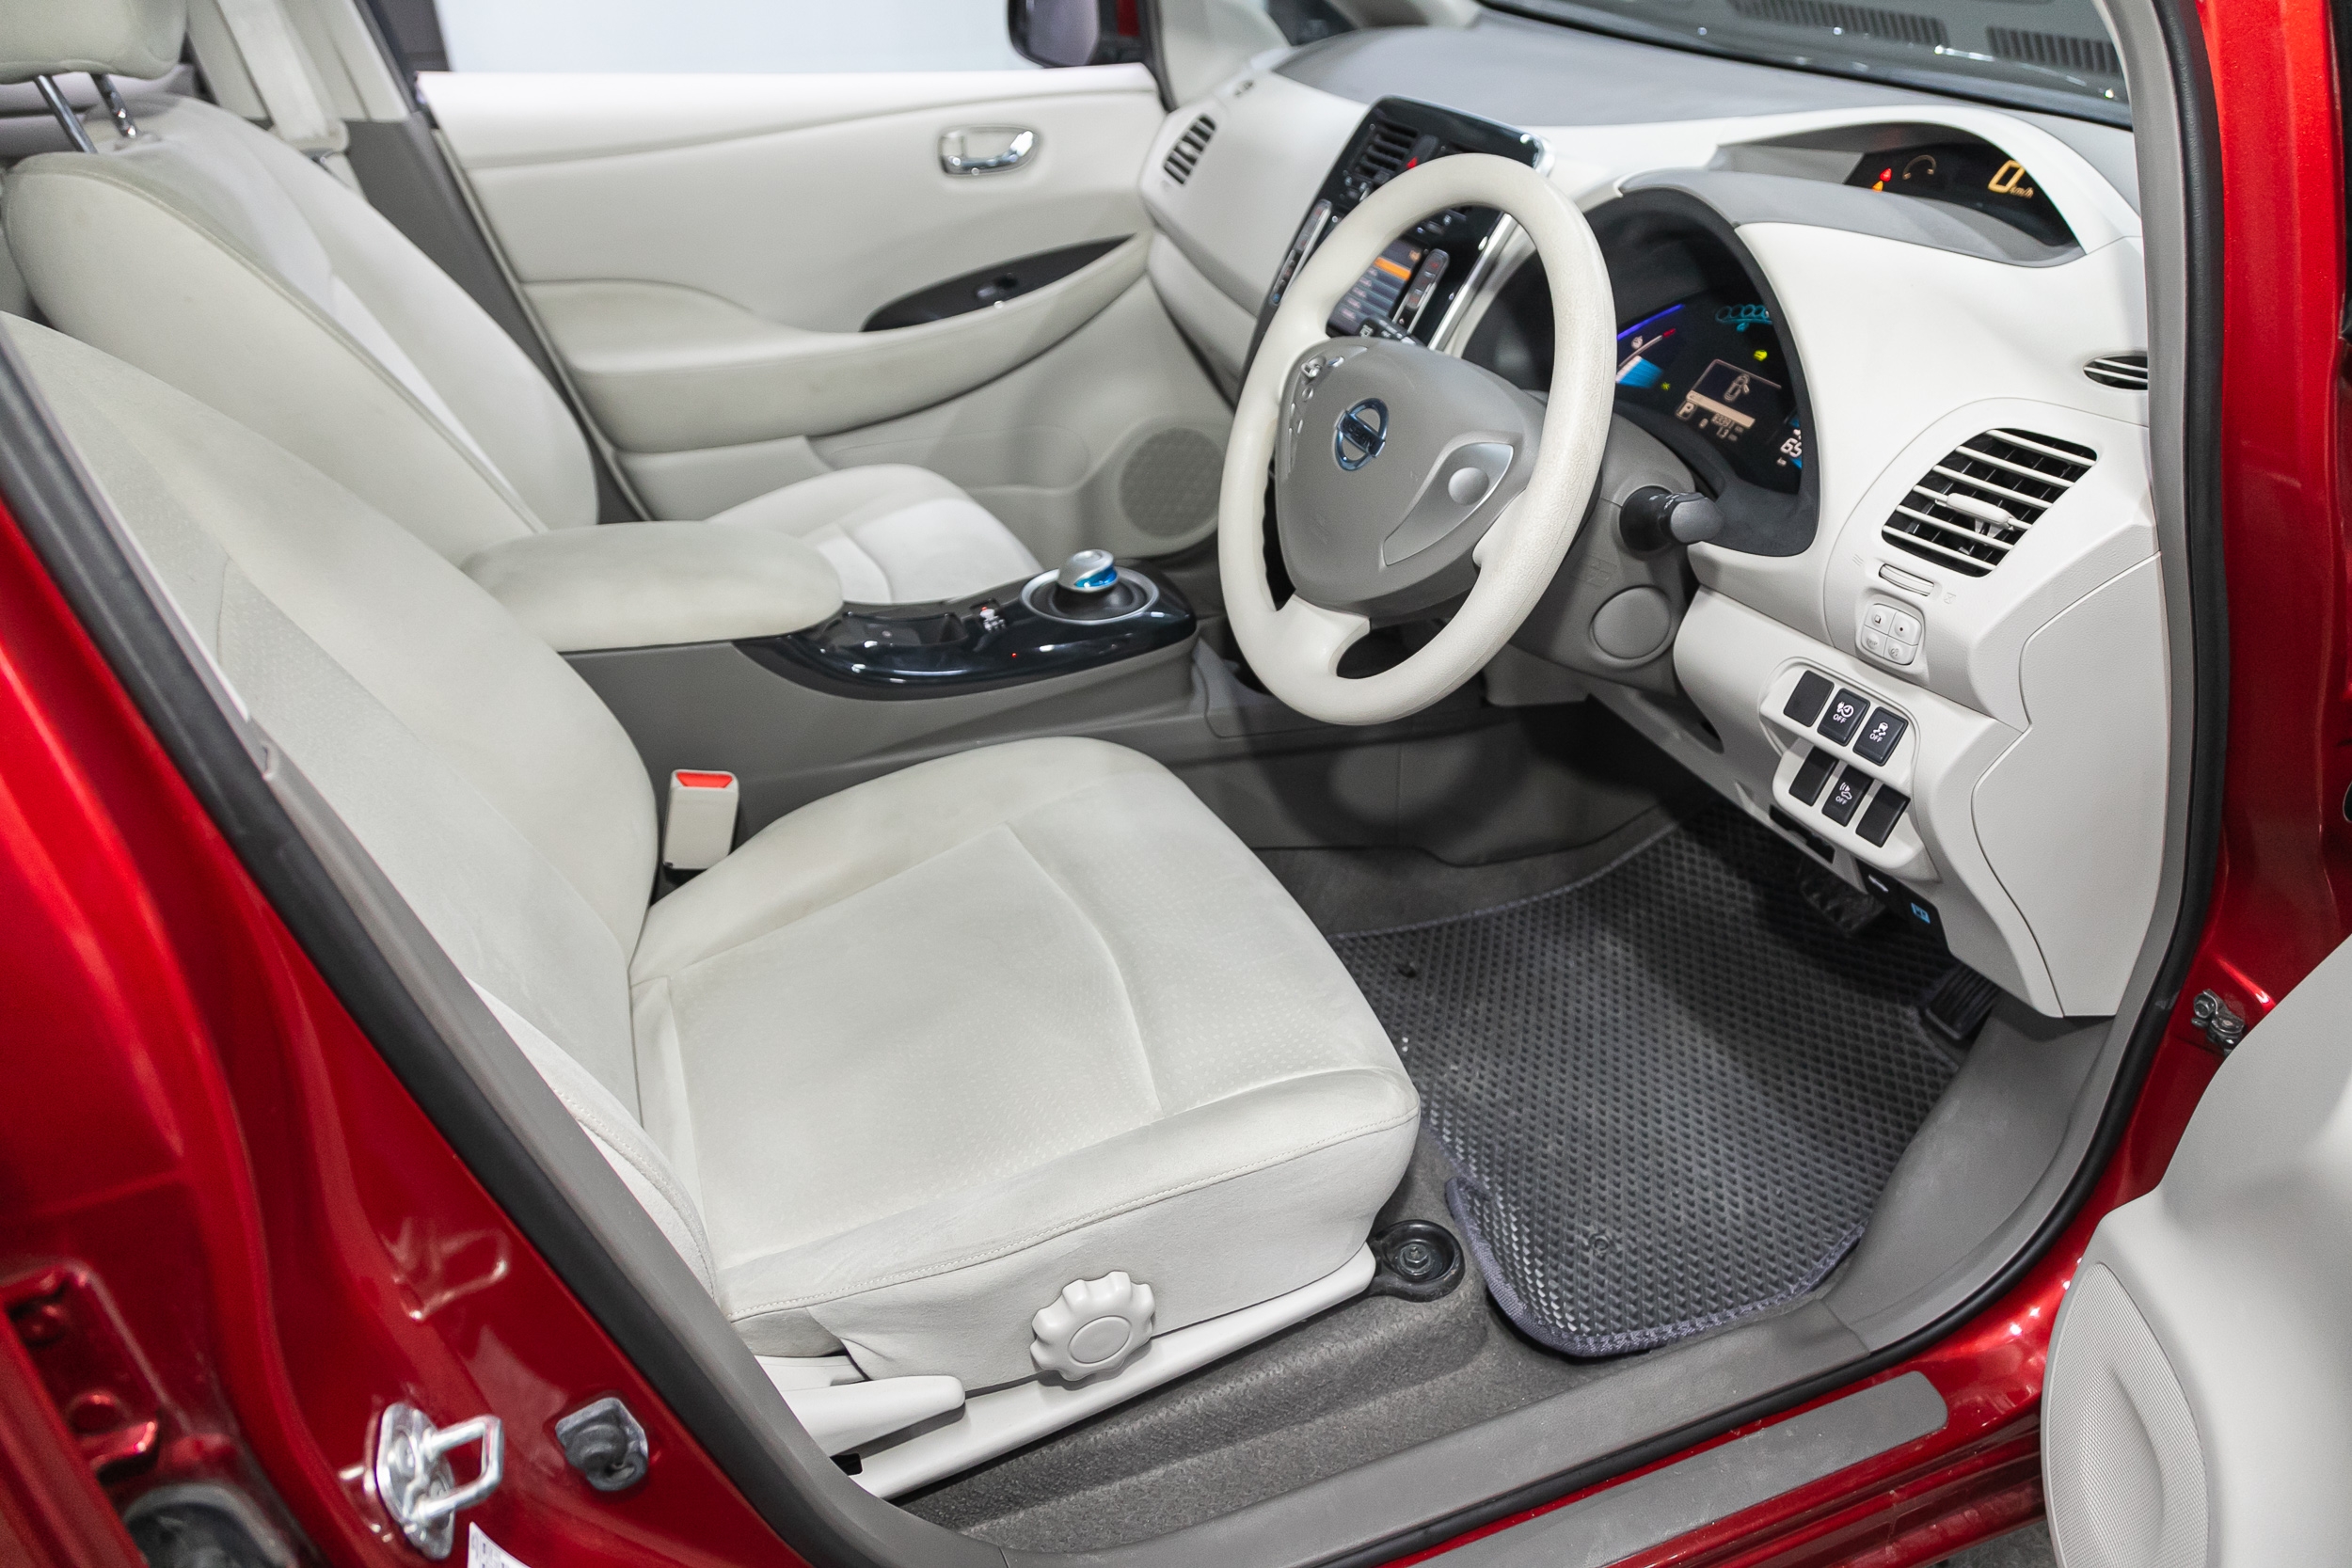 Nissan Leaf front interior